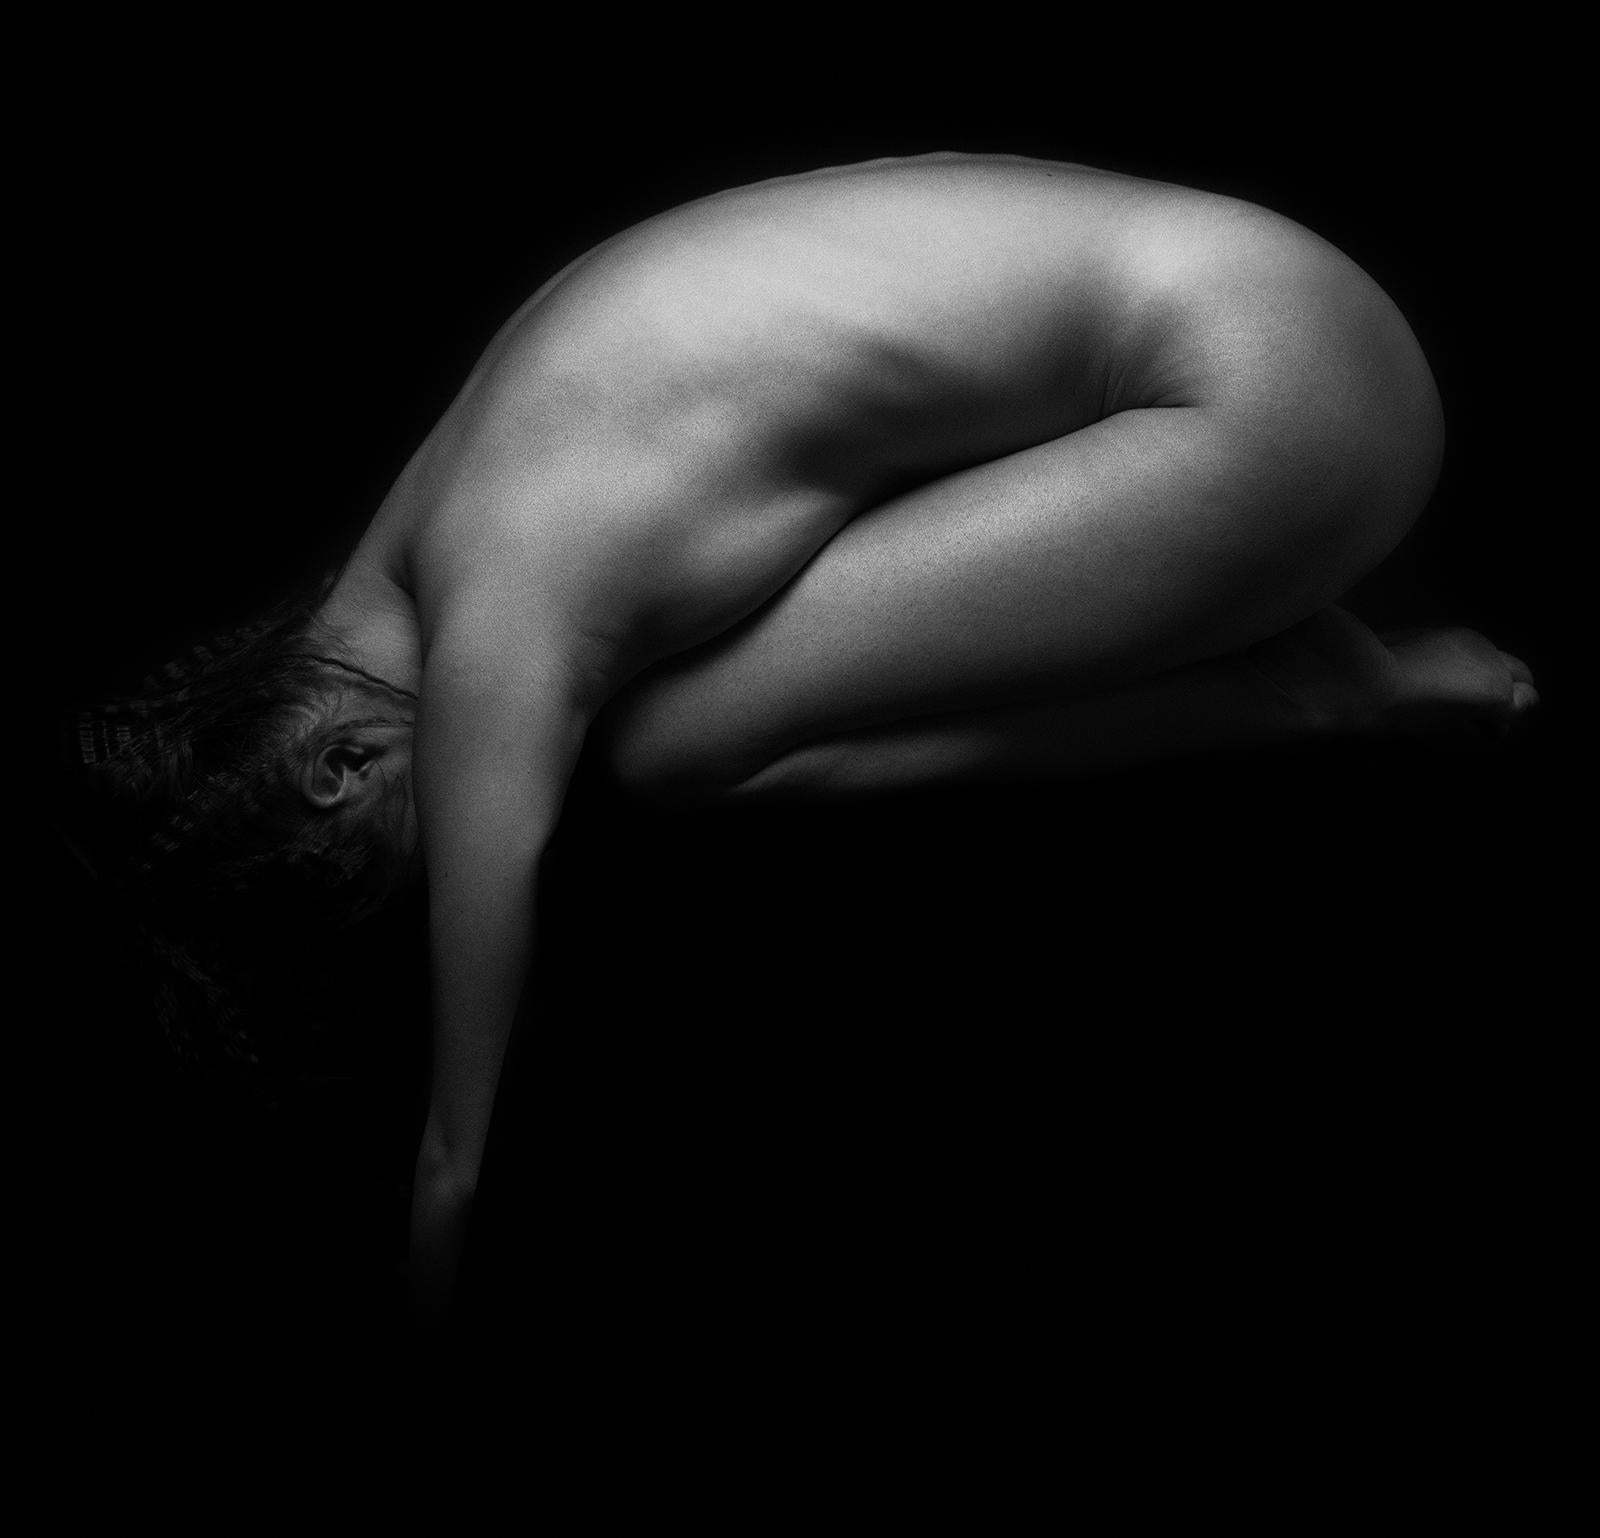 Ian Sanderson Nude Photograph – Valérie-Signierter Kunstdruck in limitierter Auflage, Schwarzweißes quadratisches Foto, Sensual